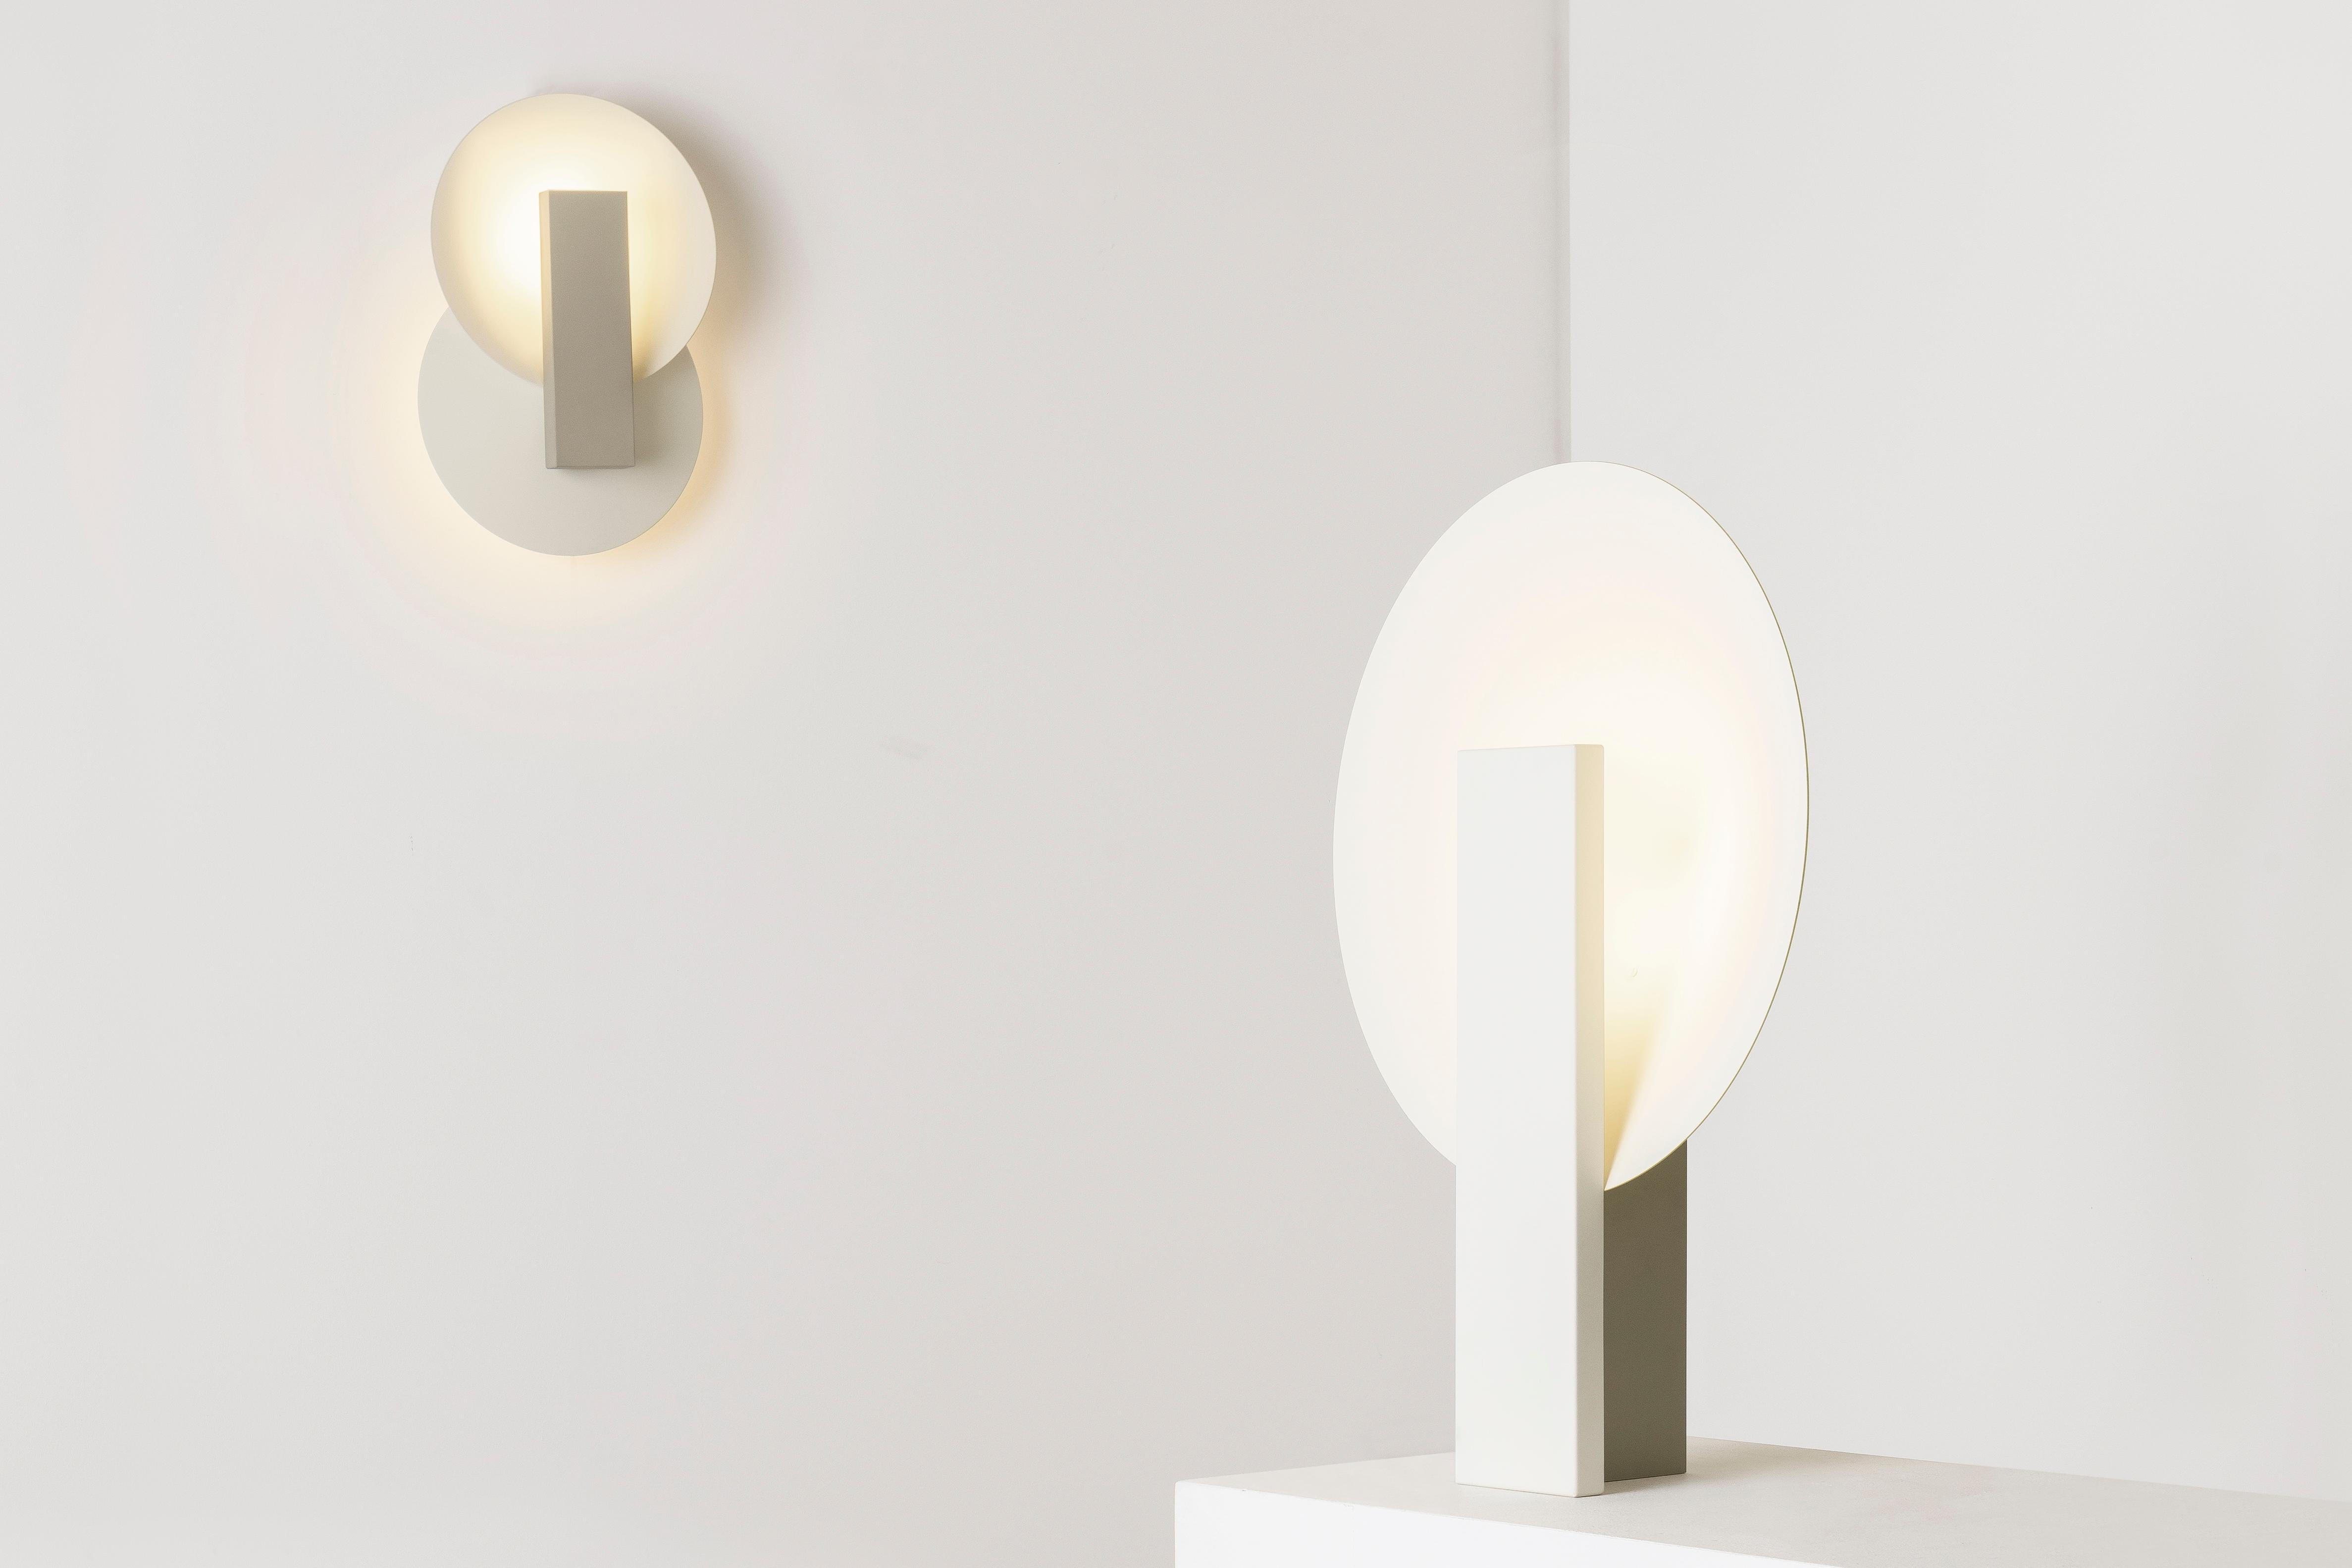 Orbe est une lampe murale à lumière indirecte, conçue pour apporter un éclairage doux à l'environnement.

La pièce a une structure simple, composée du minimum requis pour sa fonctionnalité : la boîte frontale abrite la source lumineuse et fournit le